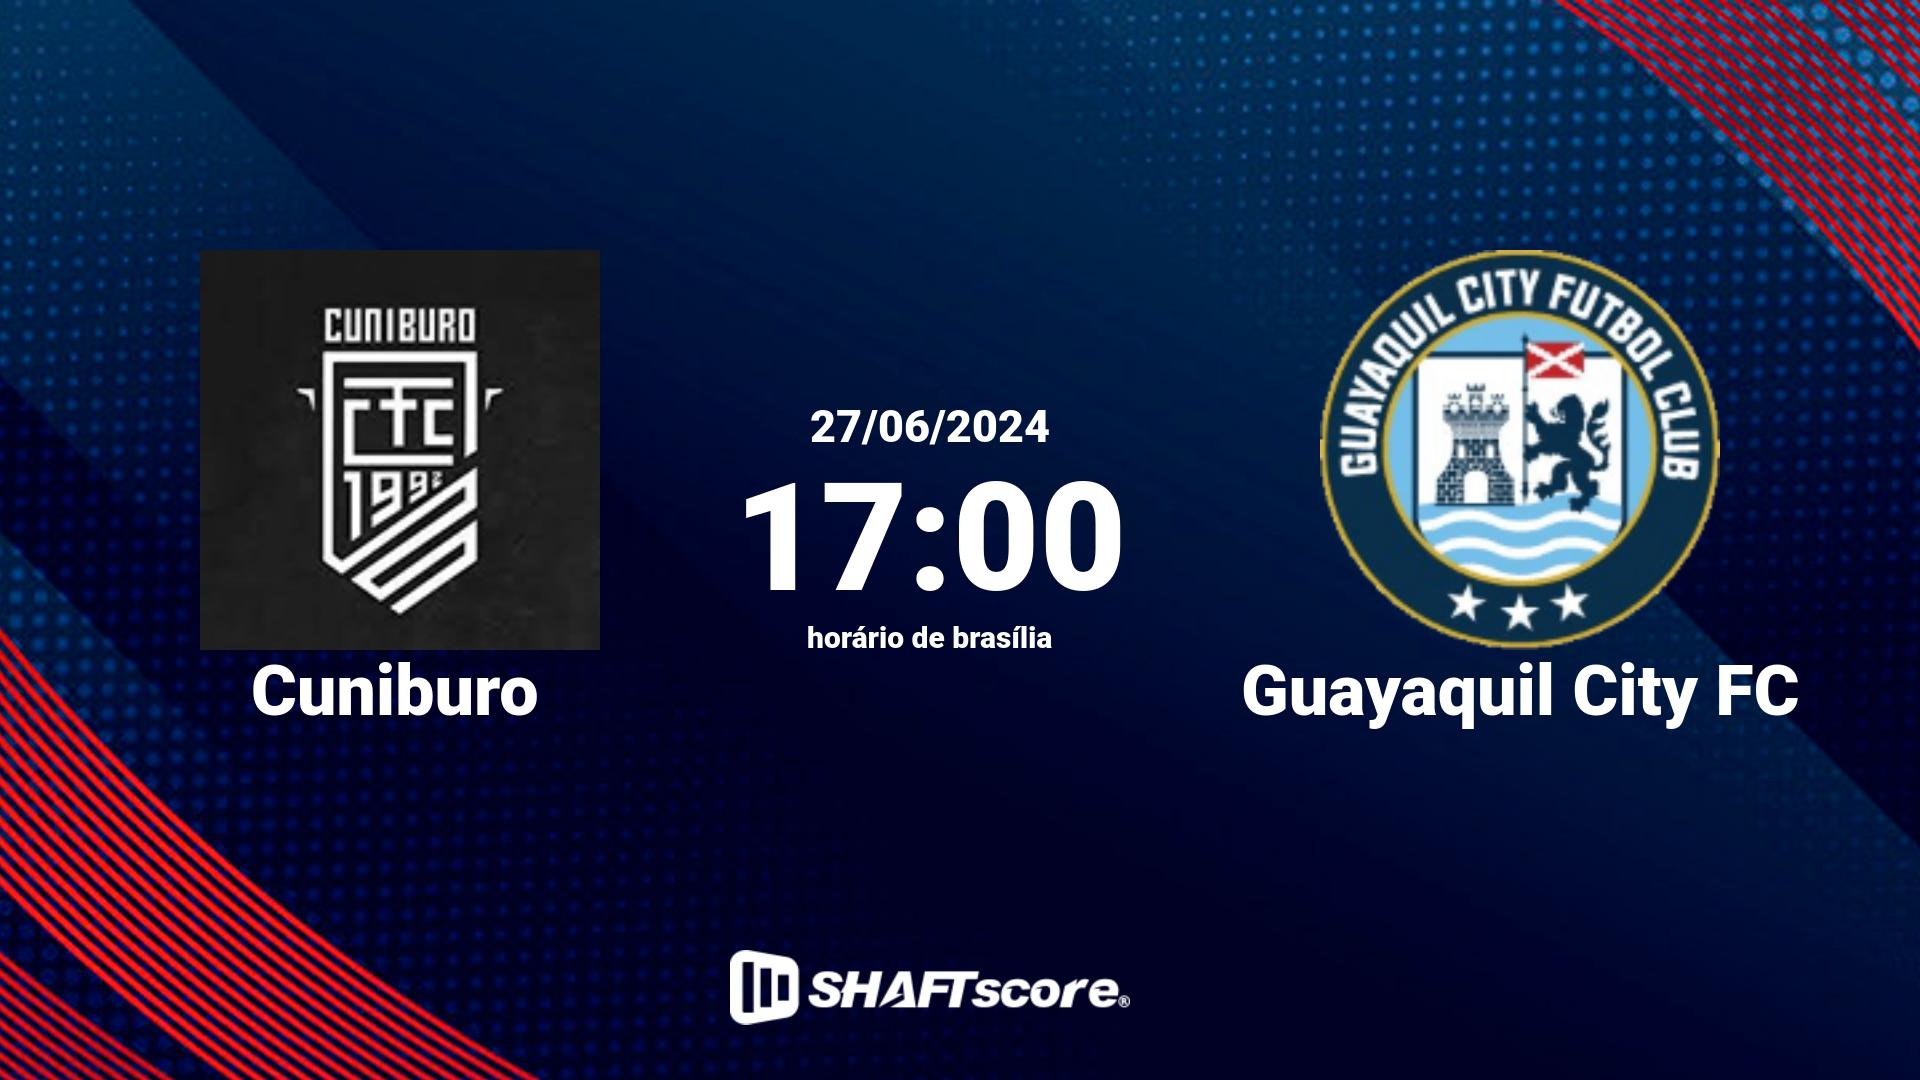 Estatísticas do jogo Cuniburo vs Guayaquil City FC 27.06 17:00